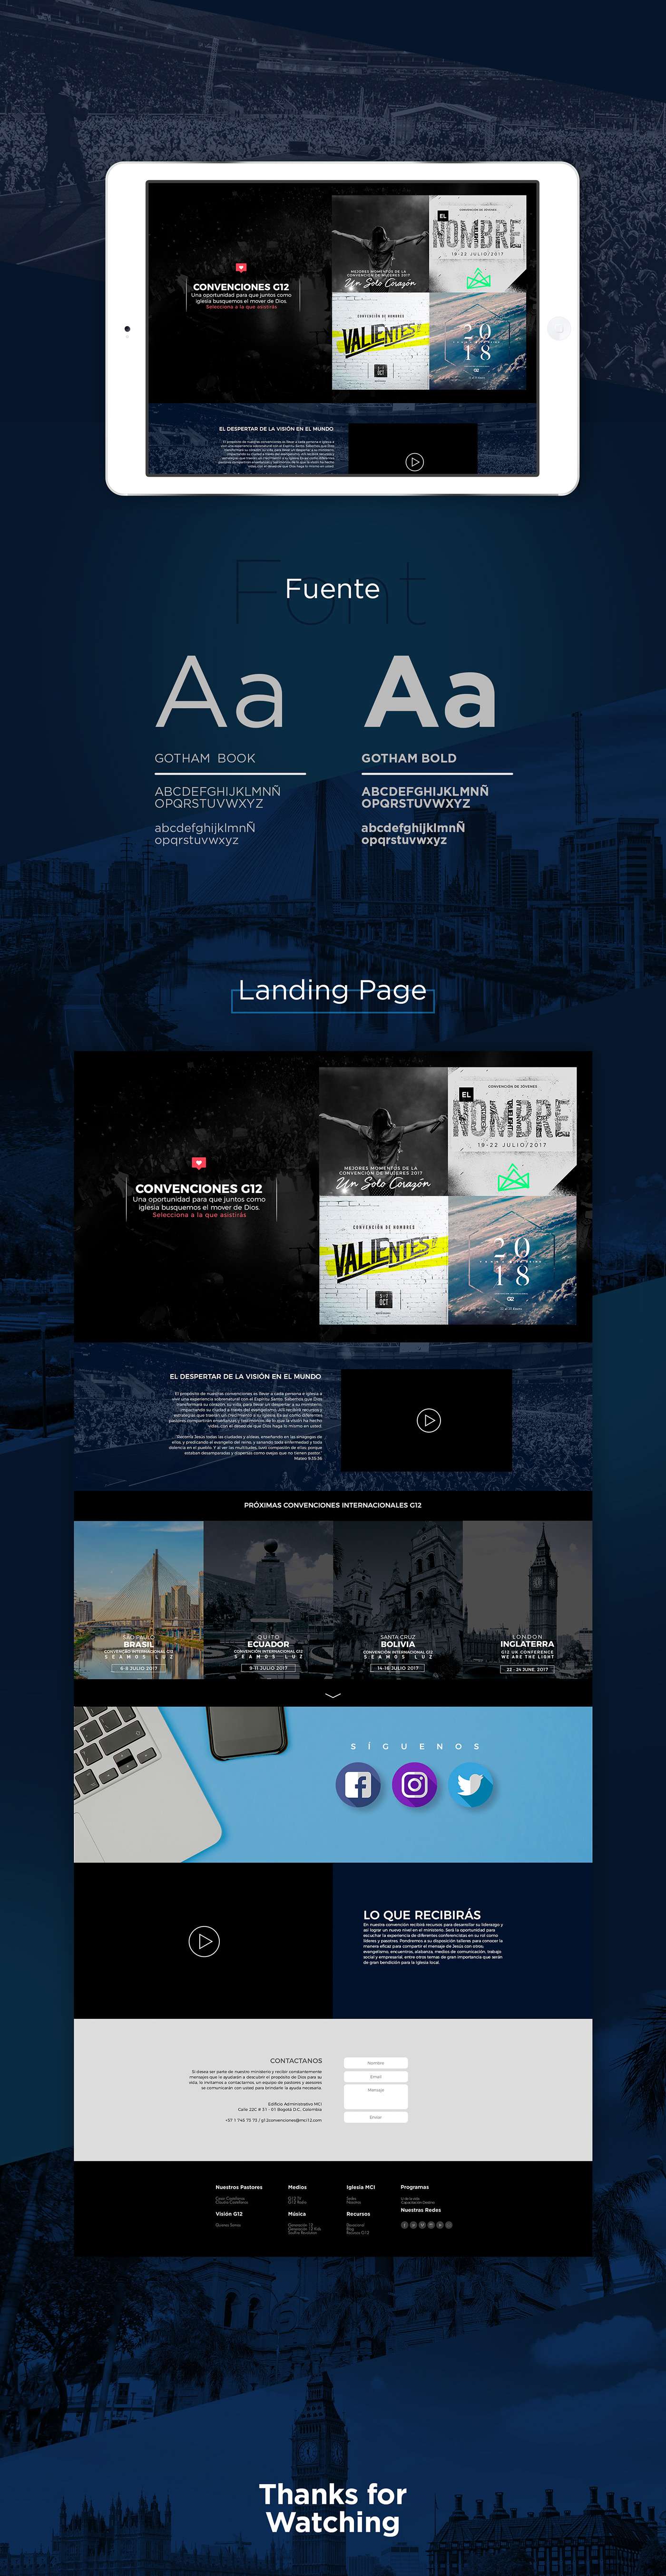 Web Web Design  landing page diseño diseño gráfico pagina web